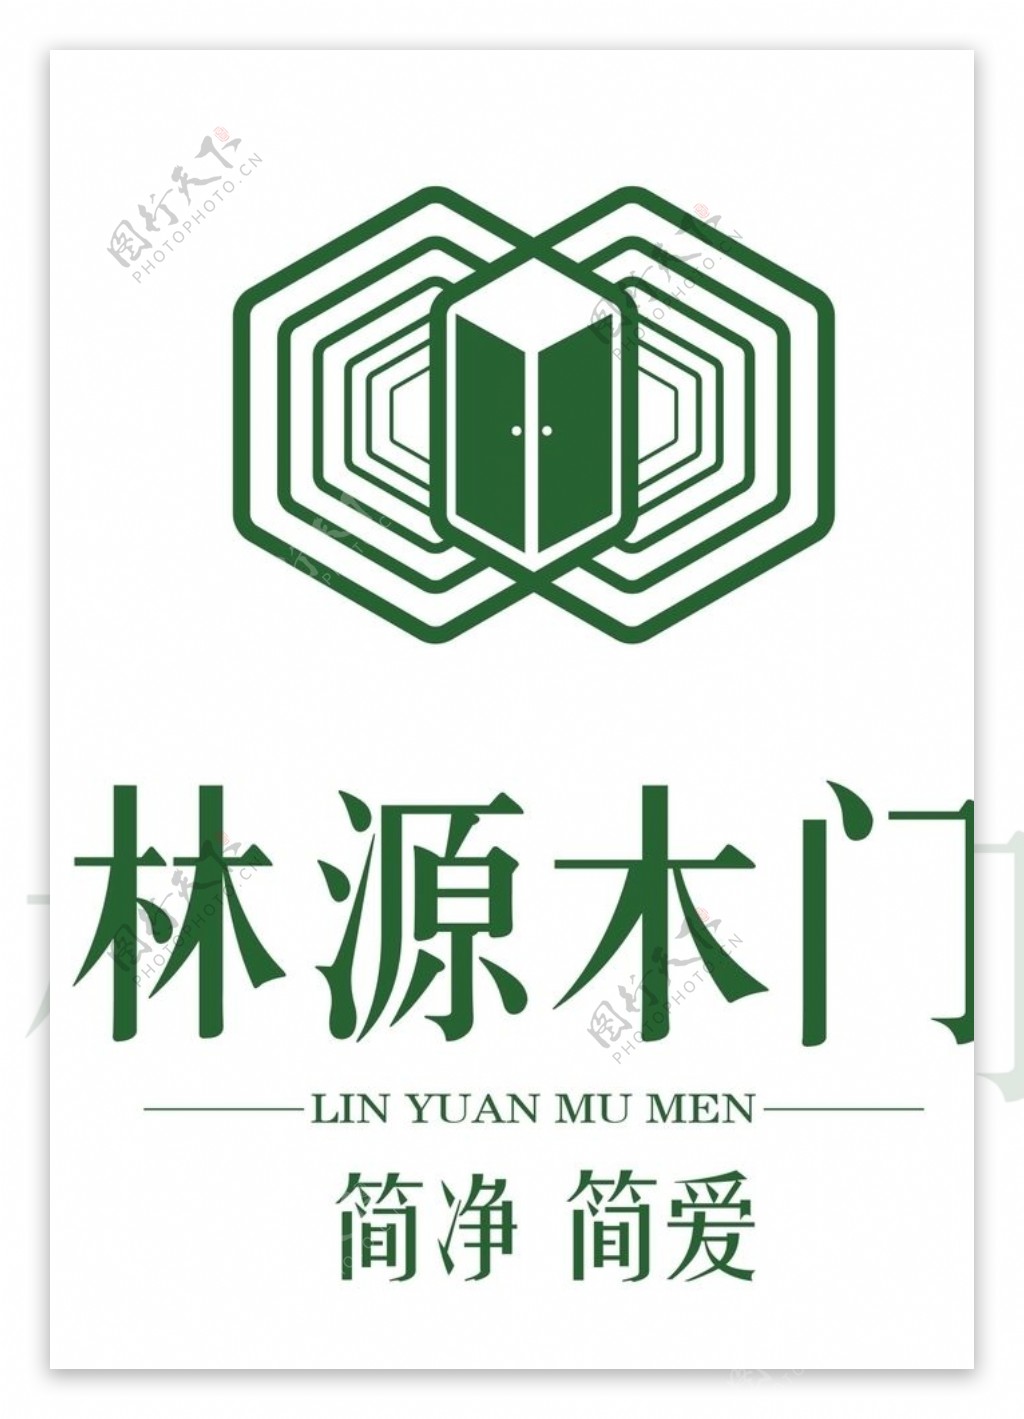 林源木门logo